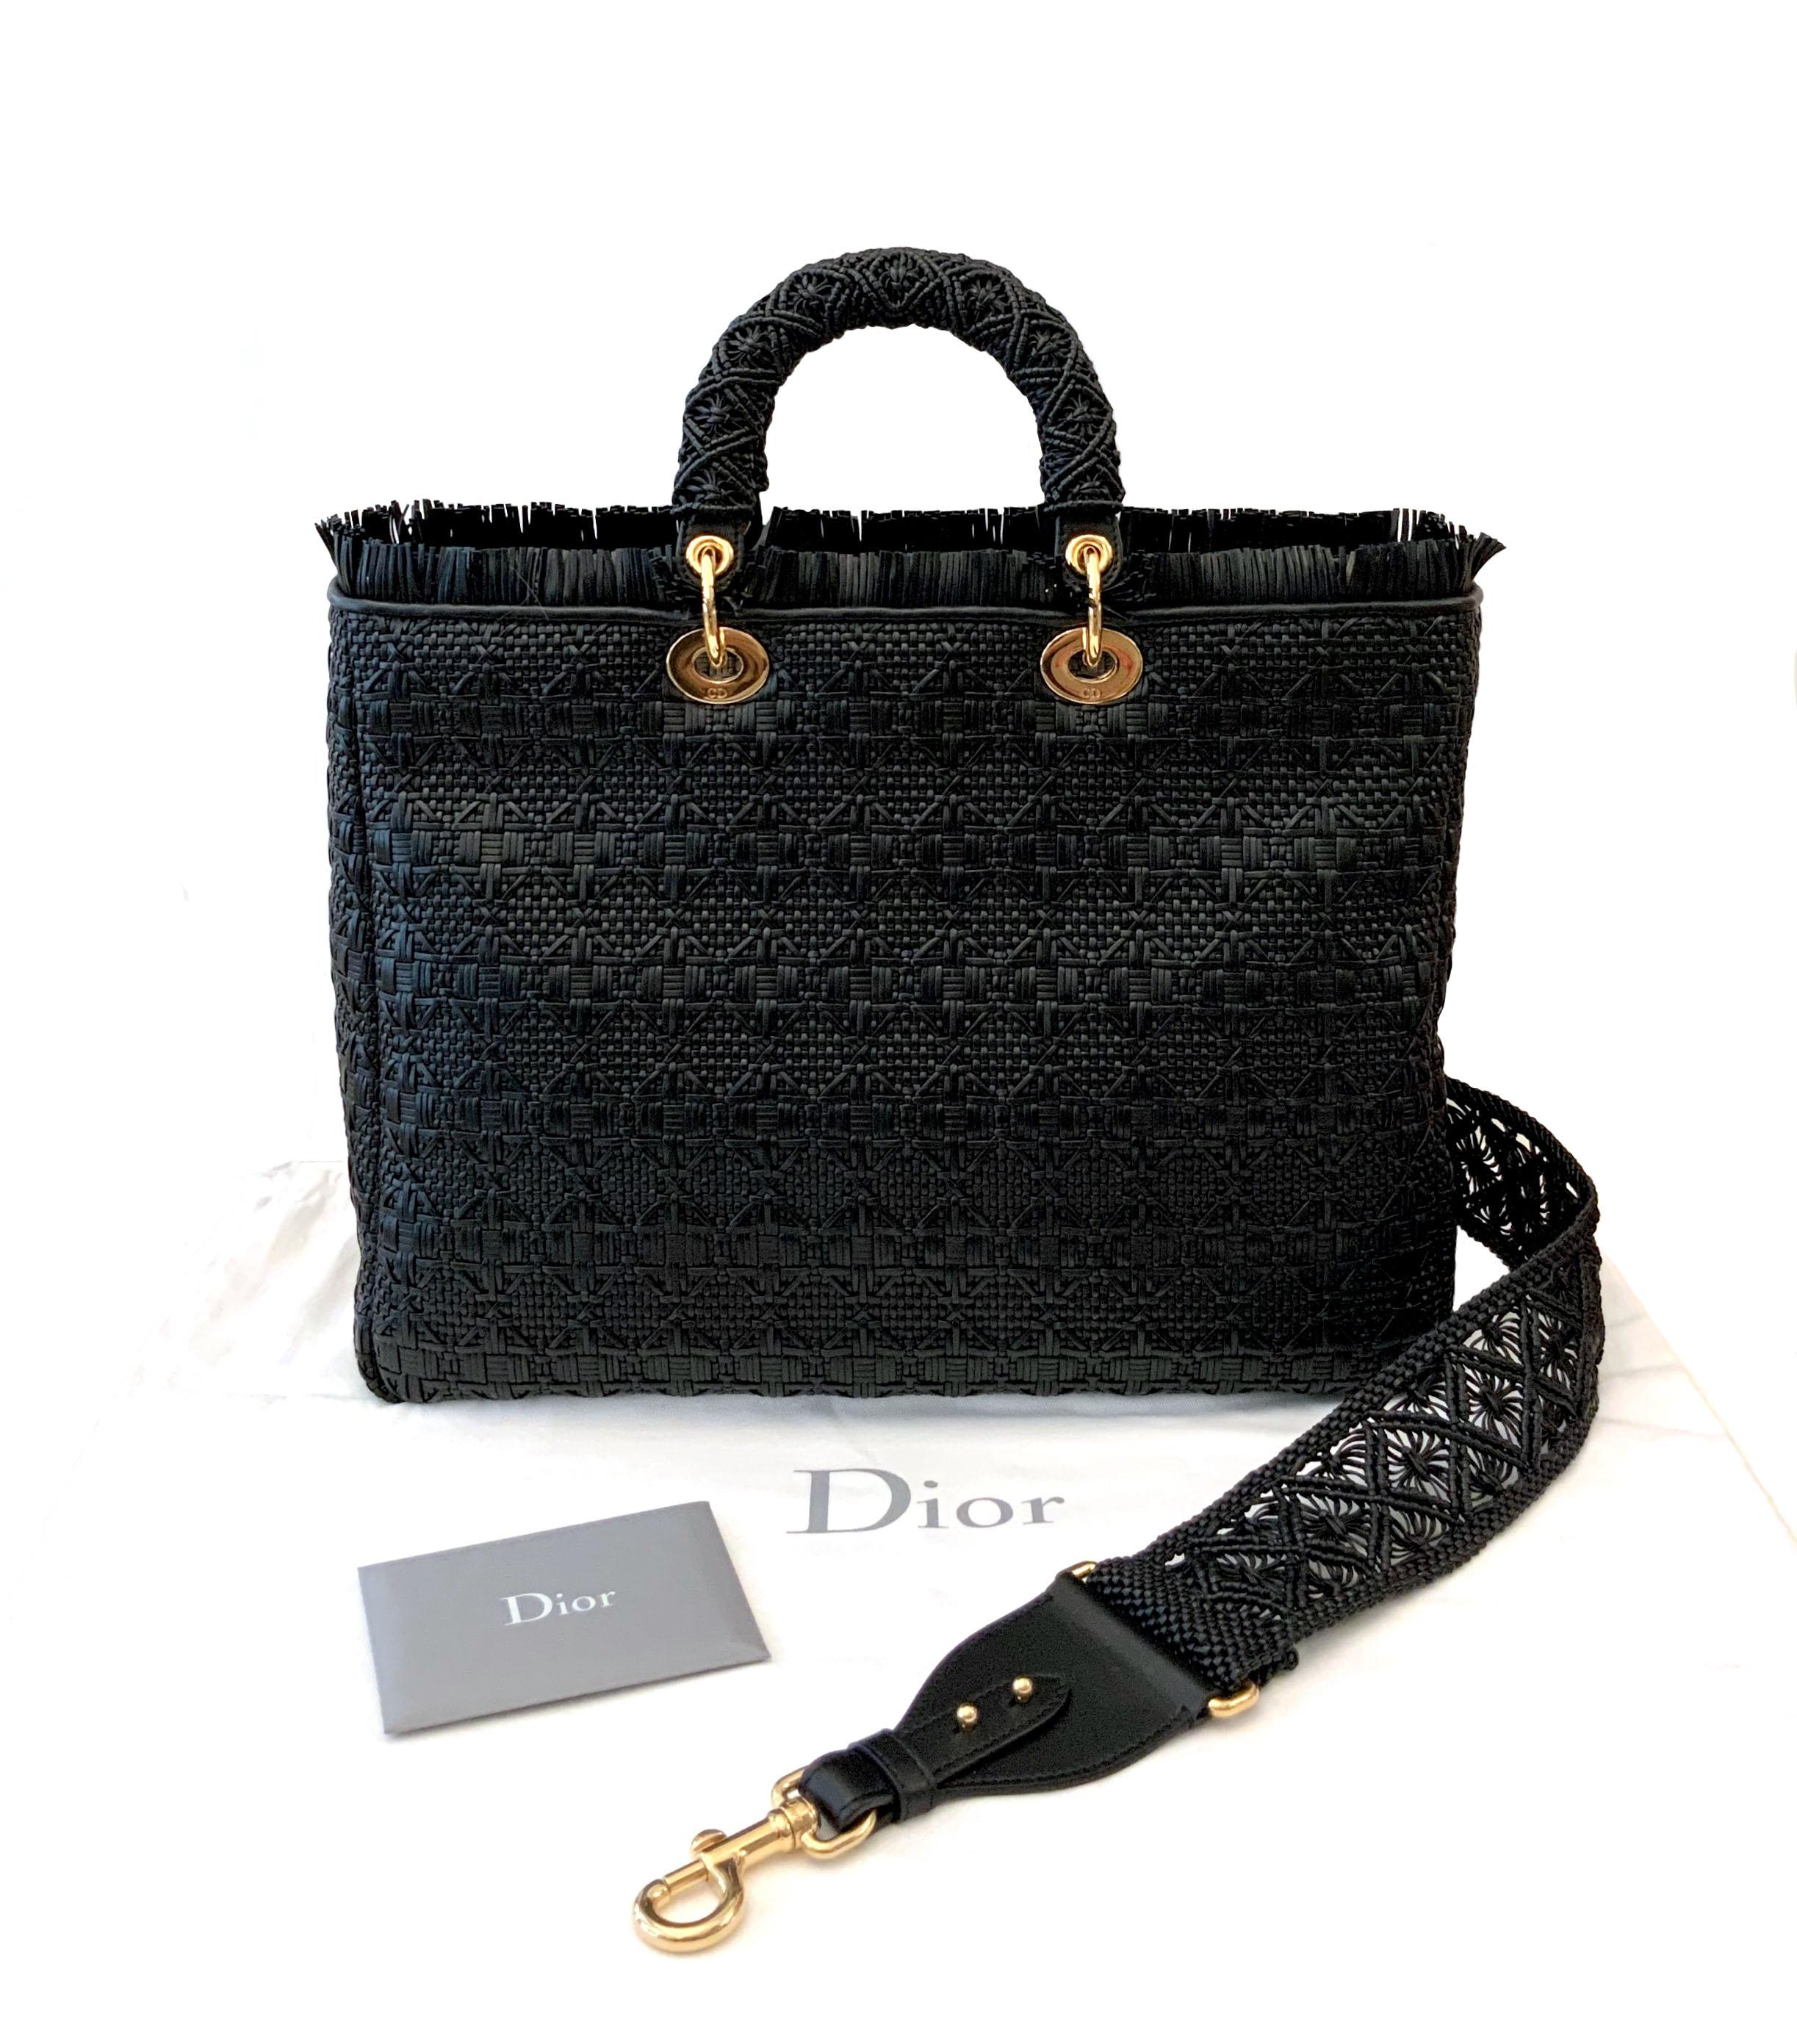 Christian Dior Lady Dior Sac Cannage en cuir tressé édition limitée 1